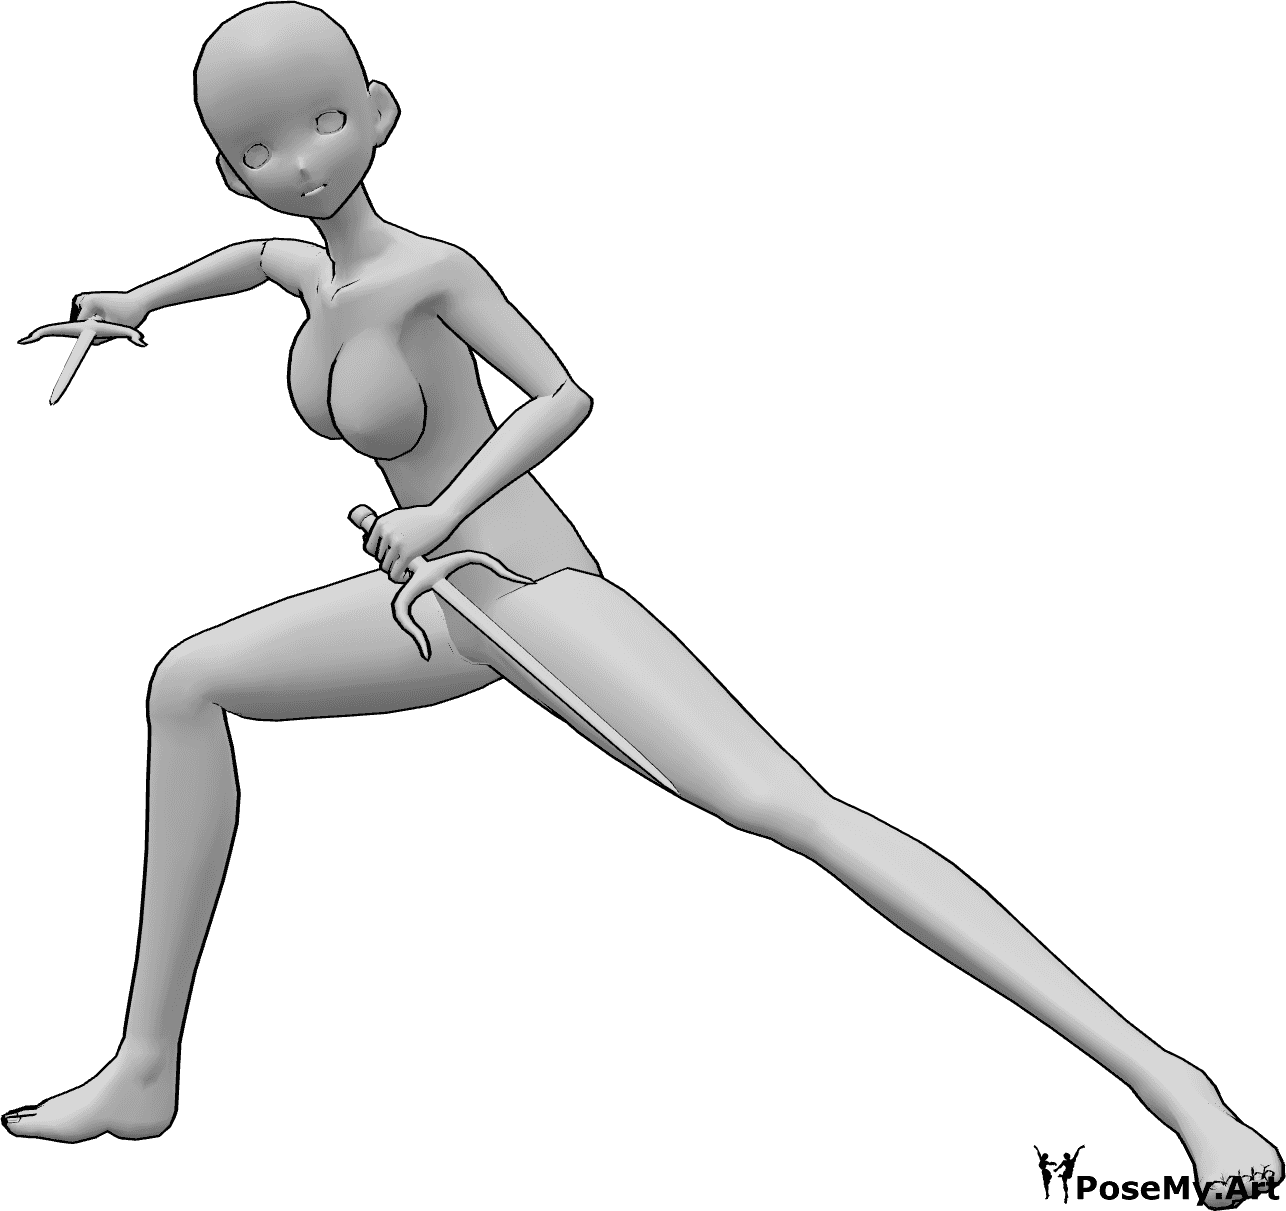 Riferimento alle pose- Anime che tengono la posa del sai - Una donna antropomorfa tiene il sais con entrambe le mani e guarda in avanti, pronta a combattere.